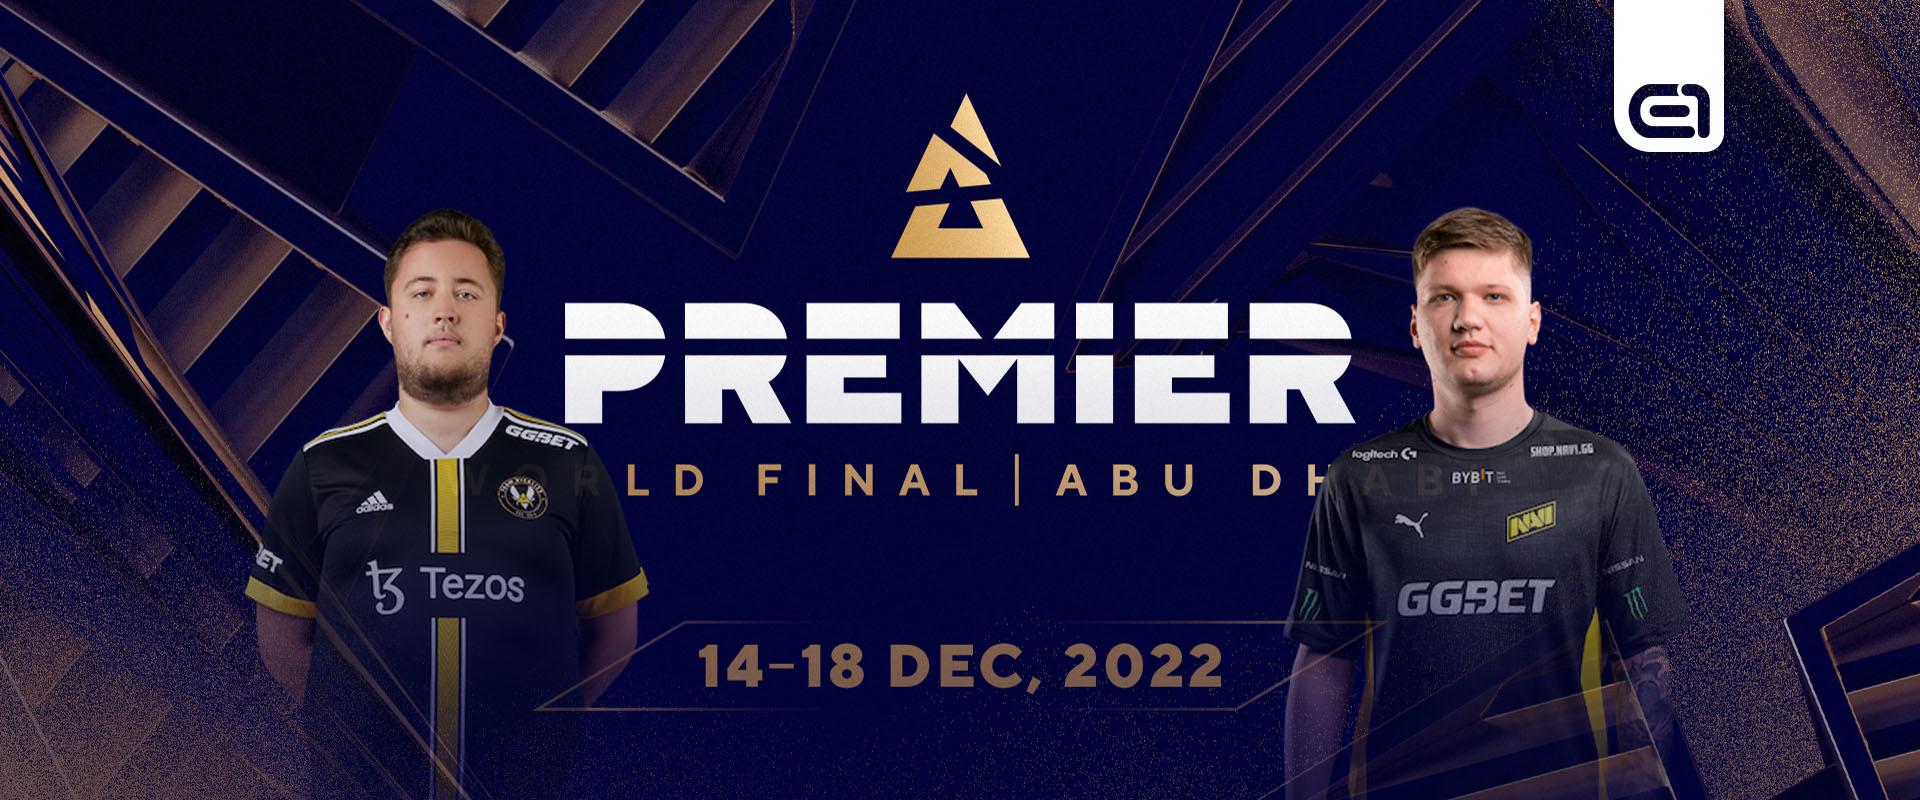 A BLAST Premier World Final dönthet az év játékosáról?